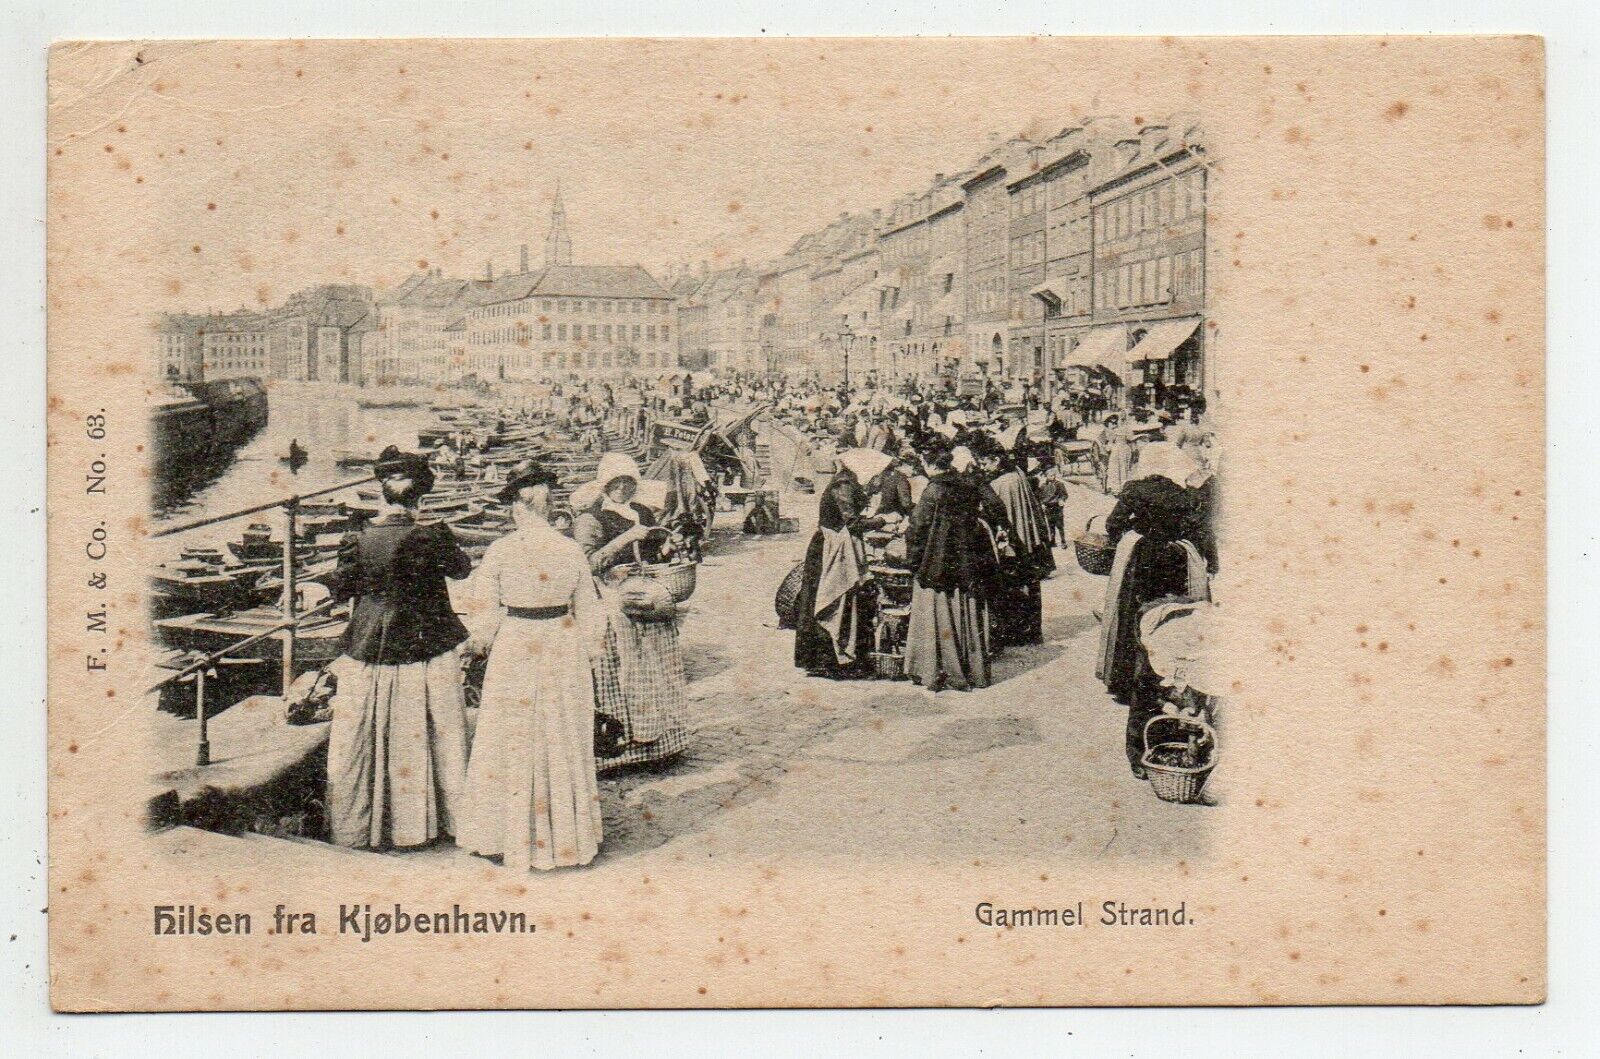 Copenhagen - Kobenhavn - Hilsen From Kjobenhavn - Gammel Strand - Year 1905